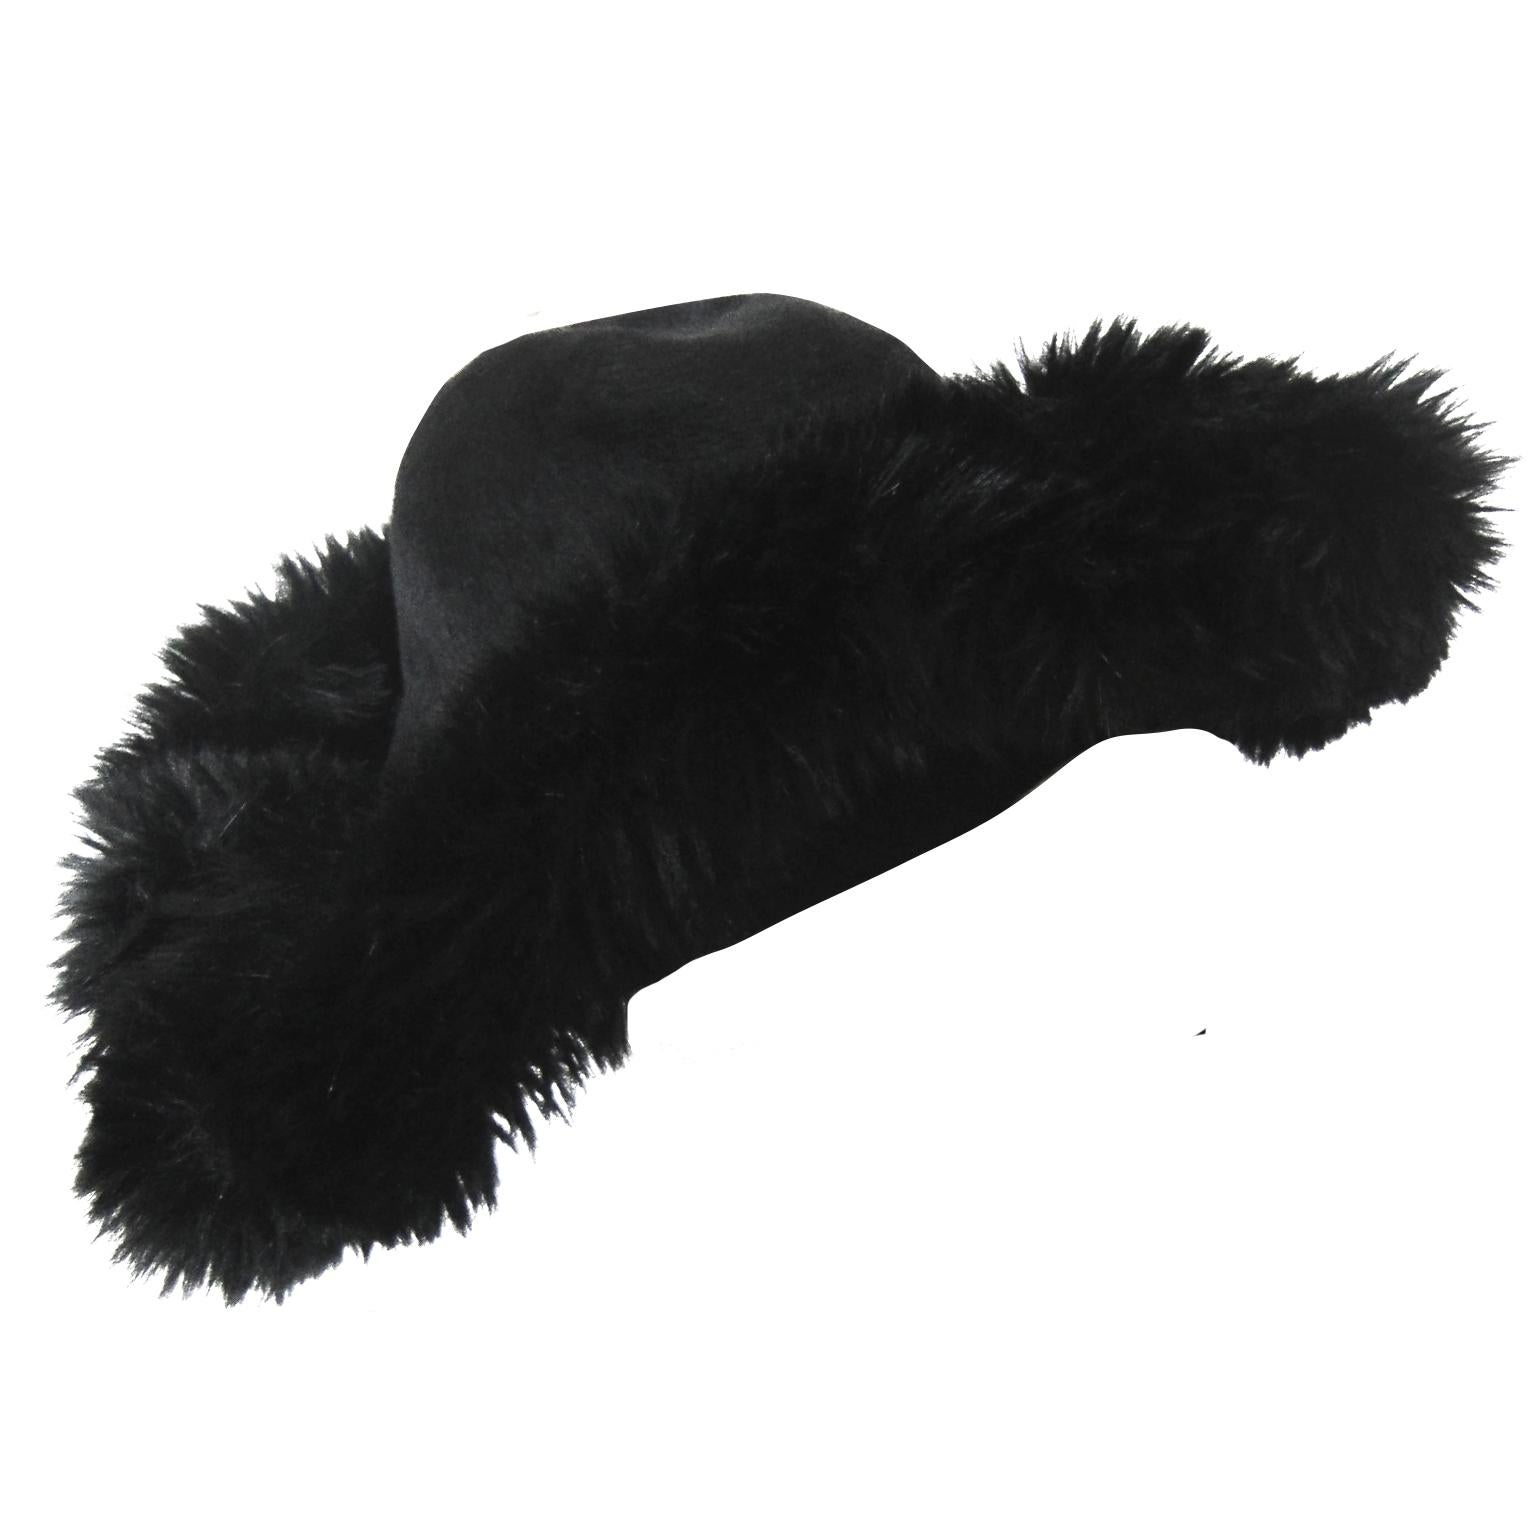 Seltener schwarzer Hut von Yohji Yamamoto aus ca. AW 2013. 
Der Hut ist aus schwarzem Filz/Wolle mit einer runden Spitze:: einer asymmetrischen breiten Krempe aus Kunstpelz mit einem seitlichen Biesendetail. Wirklich erstaunliches Stück.